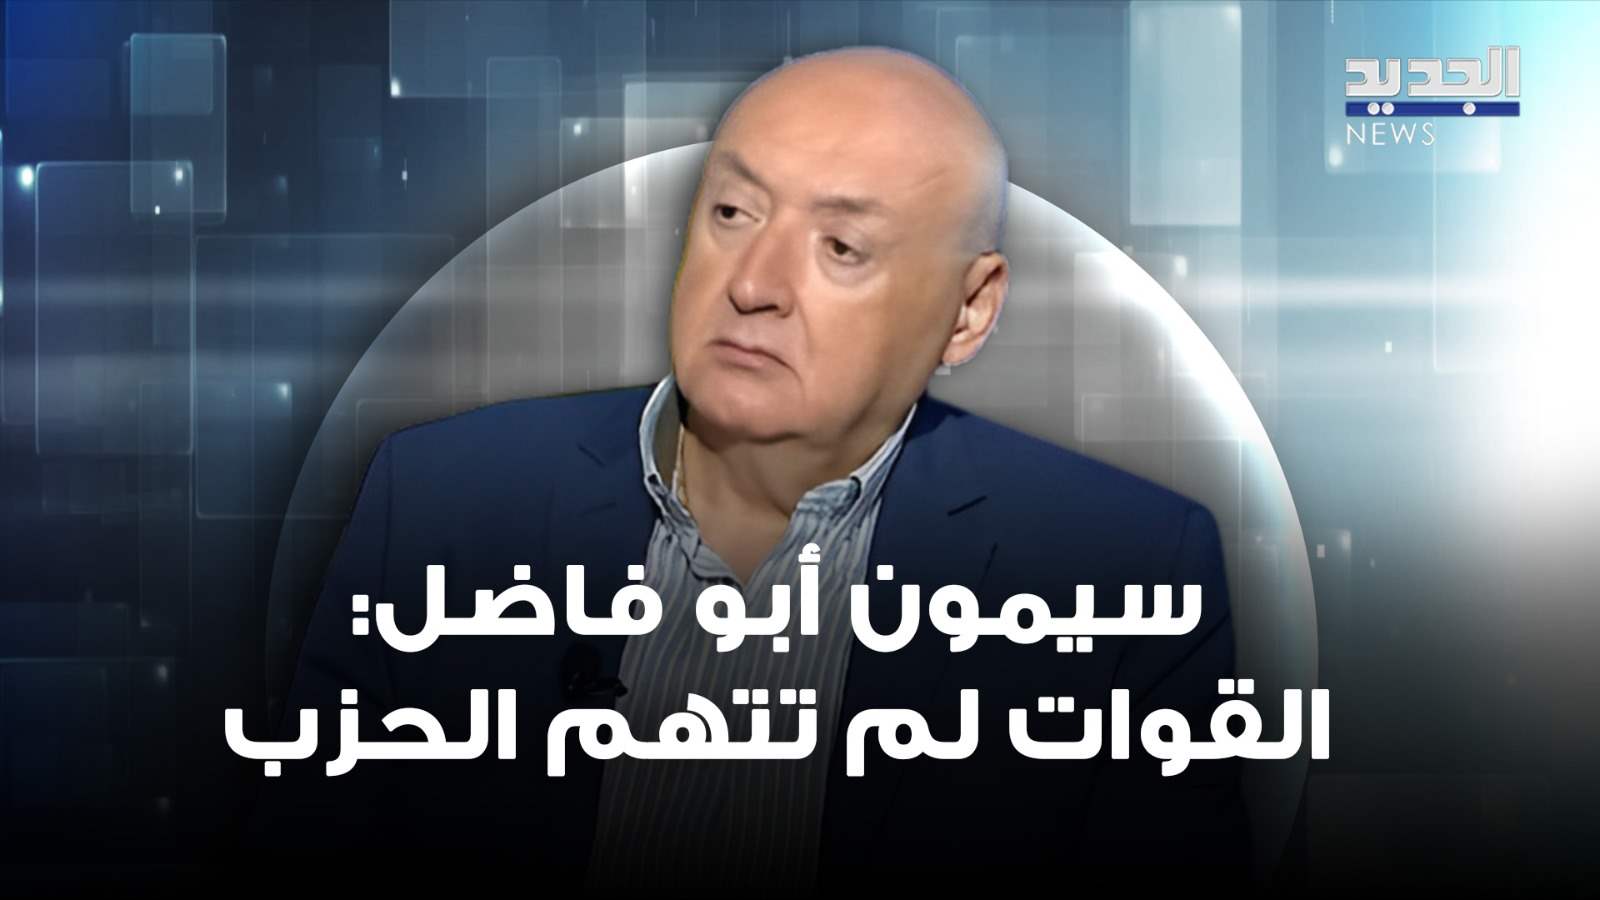 سيمون أبو فاضل : القوات تعتبر نفسها &quot;مستهدفة&quot; لكنها لم تتهم الحزب بشكل مباشر